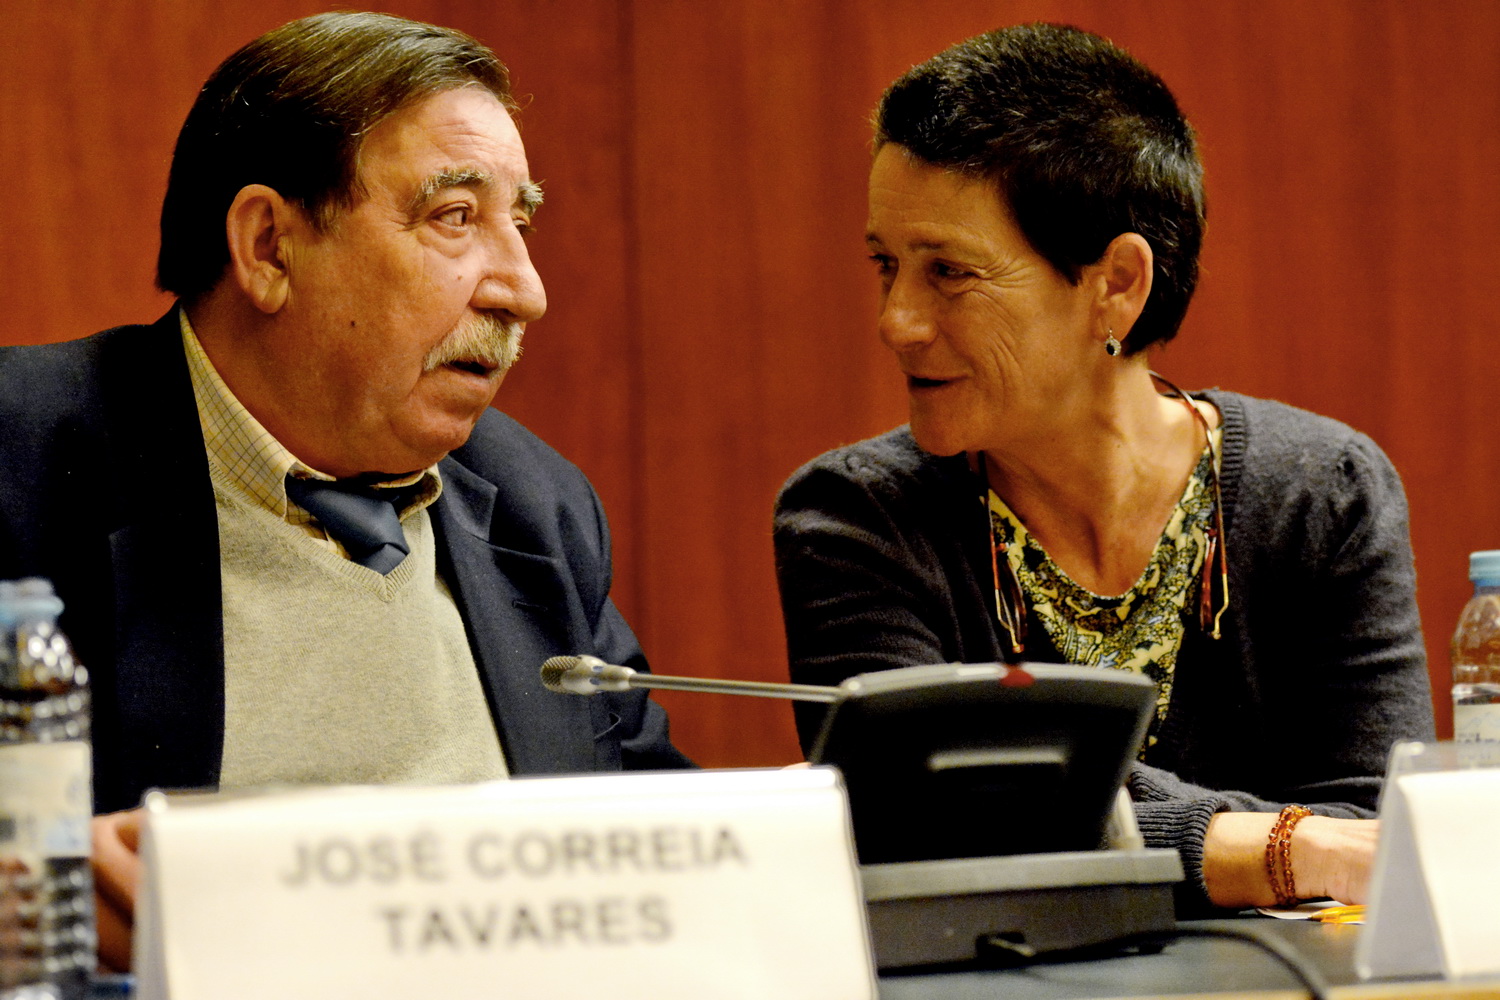 José Correia Tavares, coordenador do Grande Prémio e Patrícia Vieira, mulher do premiado, Paulo Varela Gomes